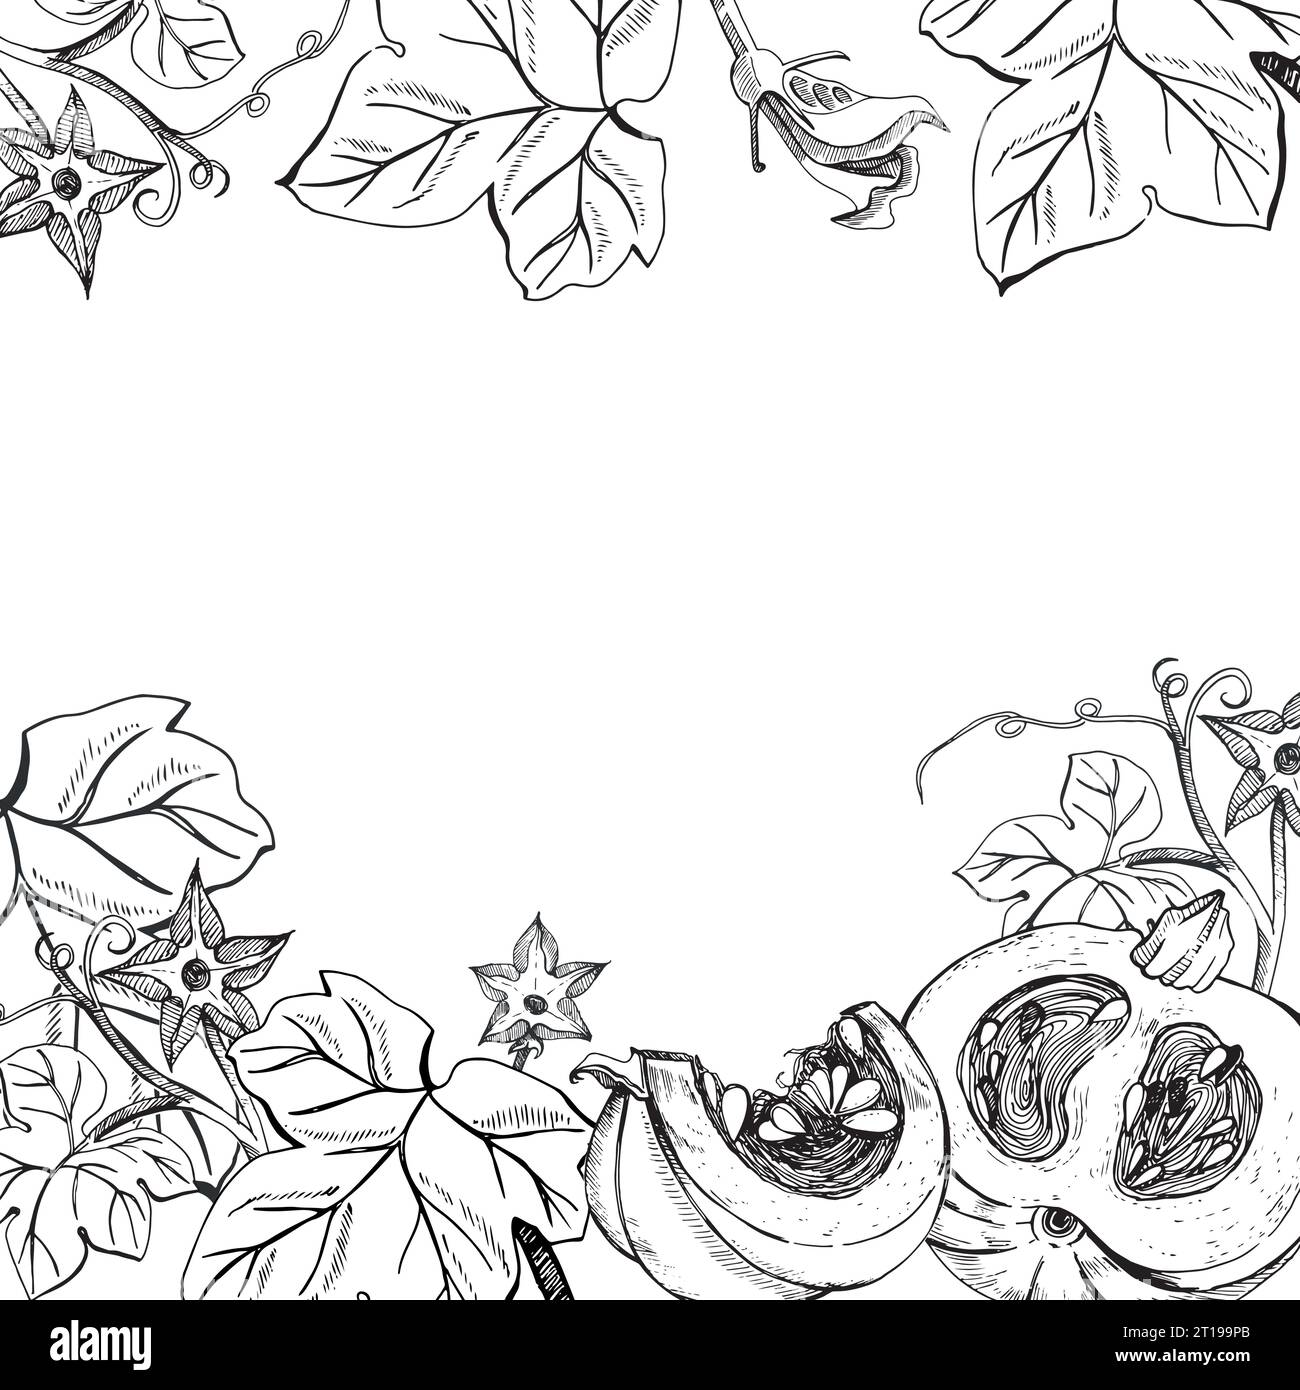 Marco cuadrado sobre un tema de otoño. Calabazas y hojas de calabaza dibujado a mano en gráficos sobre un fondo blanco. Calabaza entera, rebanada de calabaza, hojas Ilustración del Vector